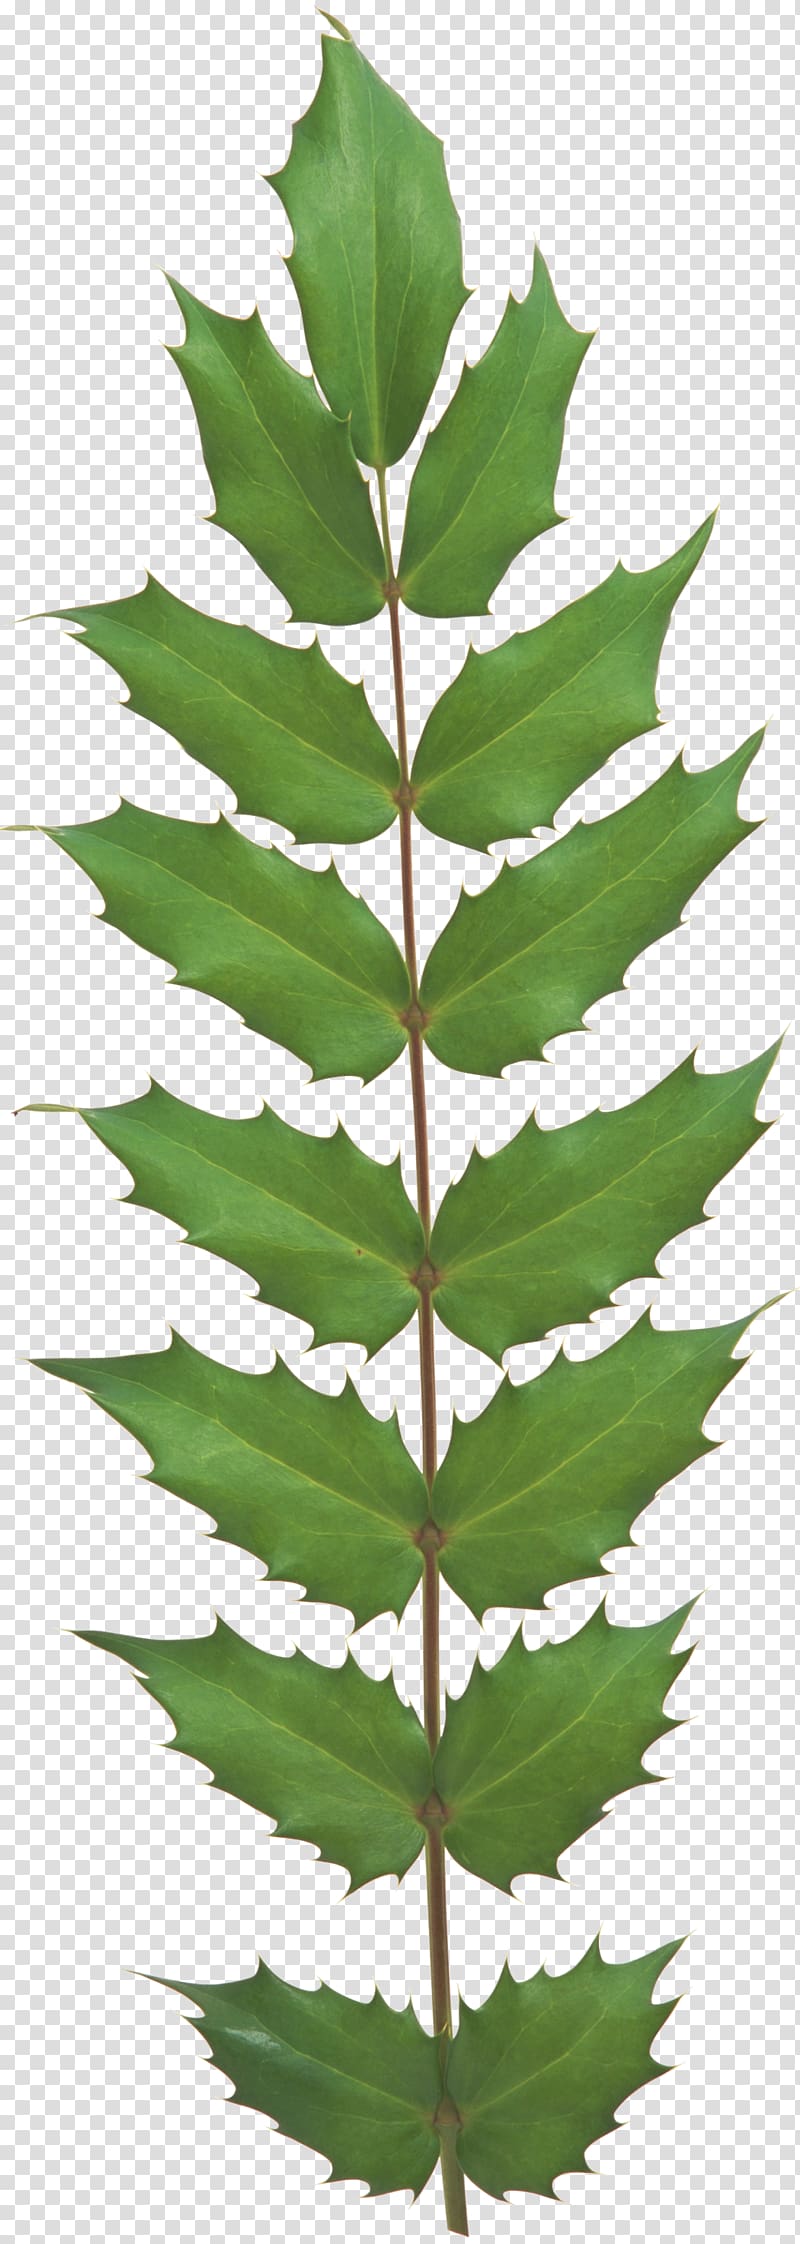 Leaf Evergreen Plant stem Tree Vascular plant, Leaf transparent background PNG clipart